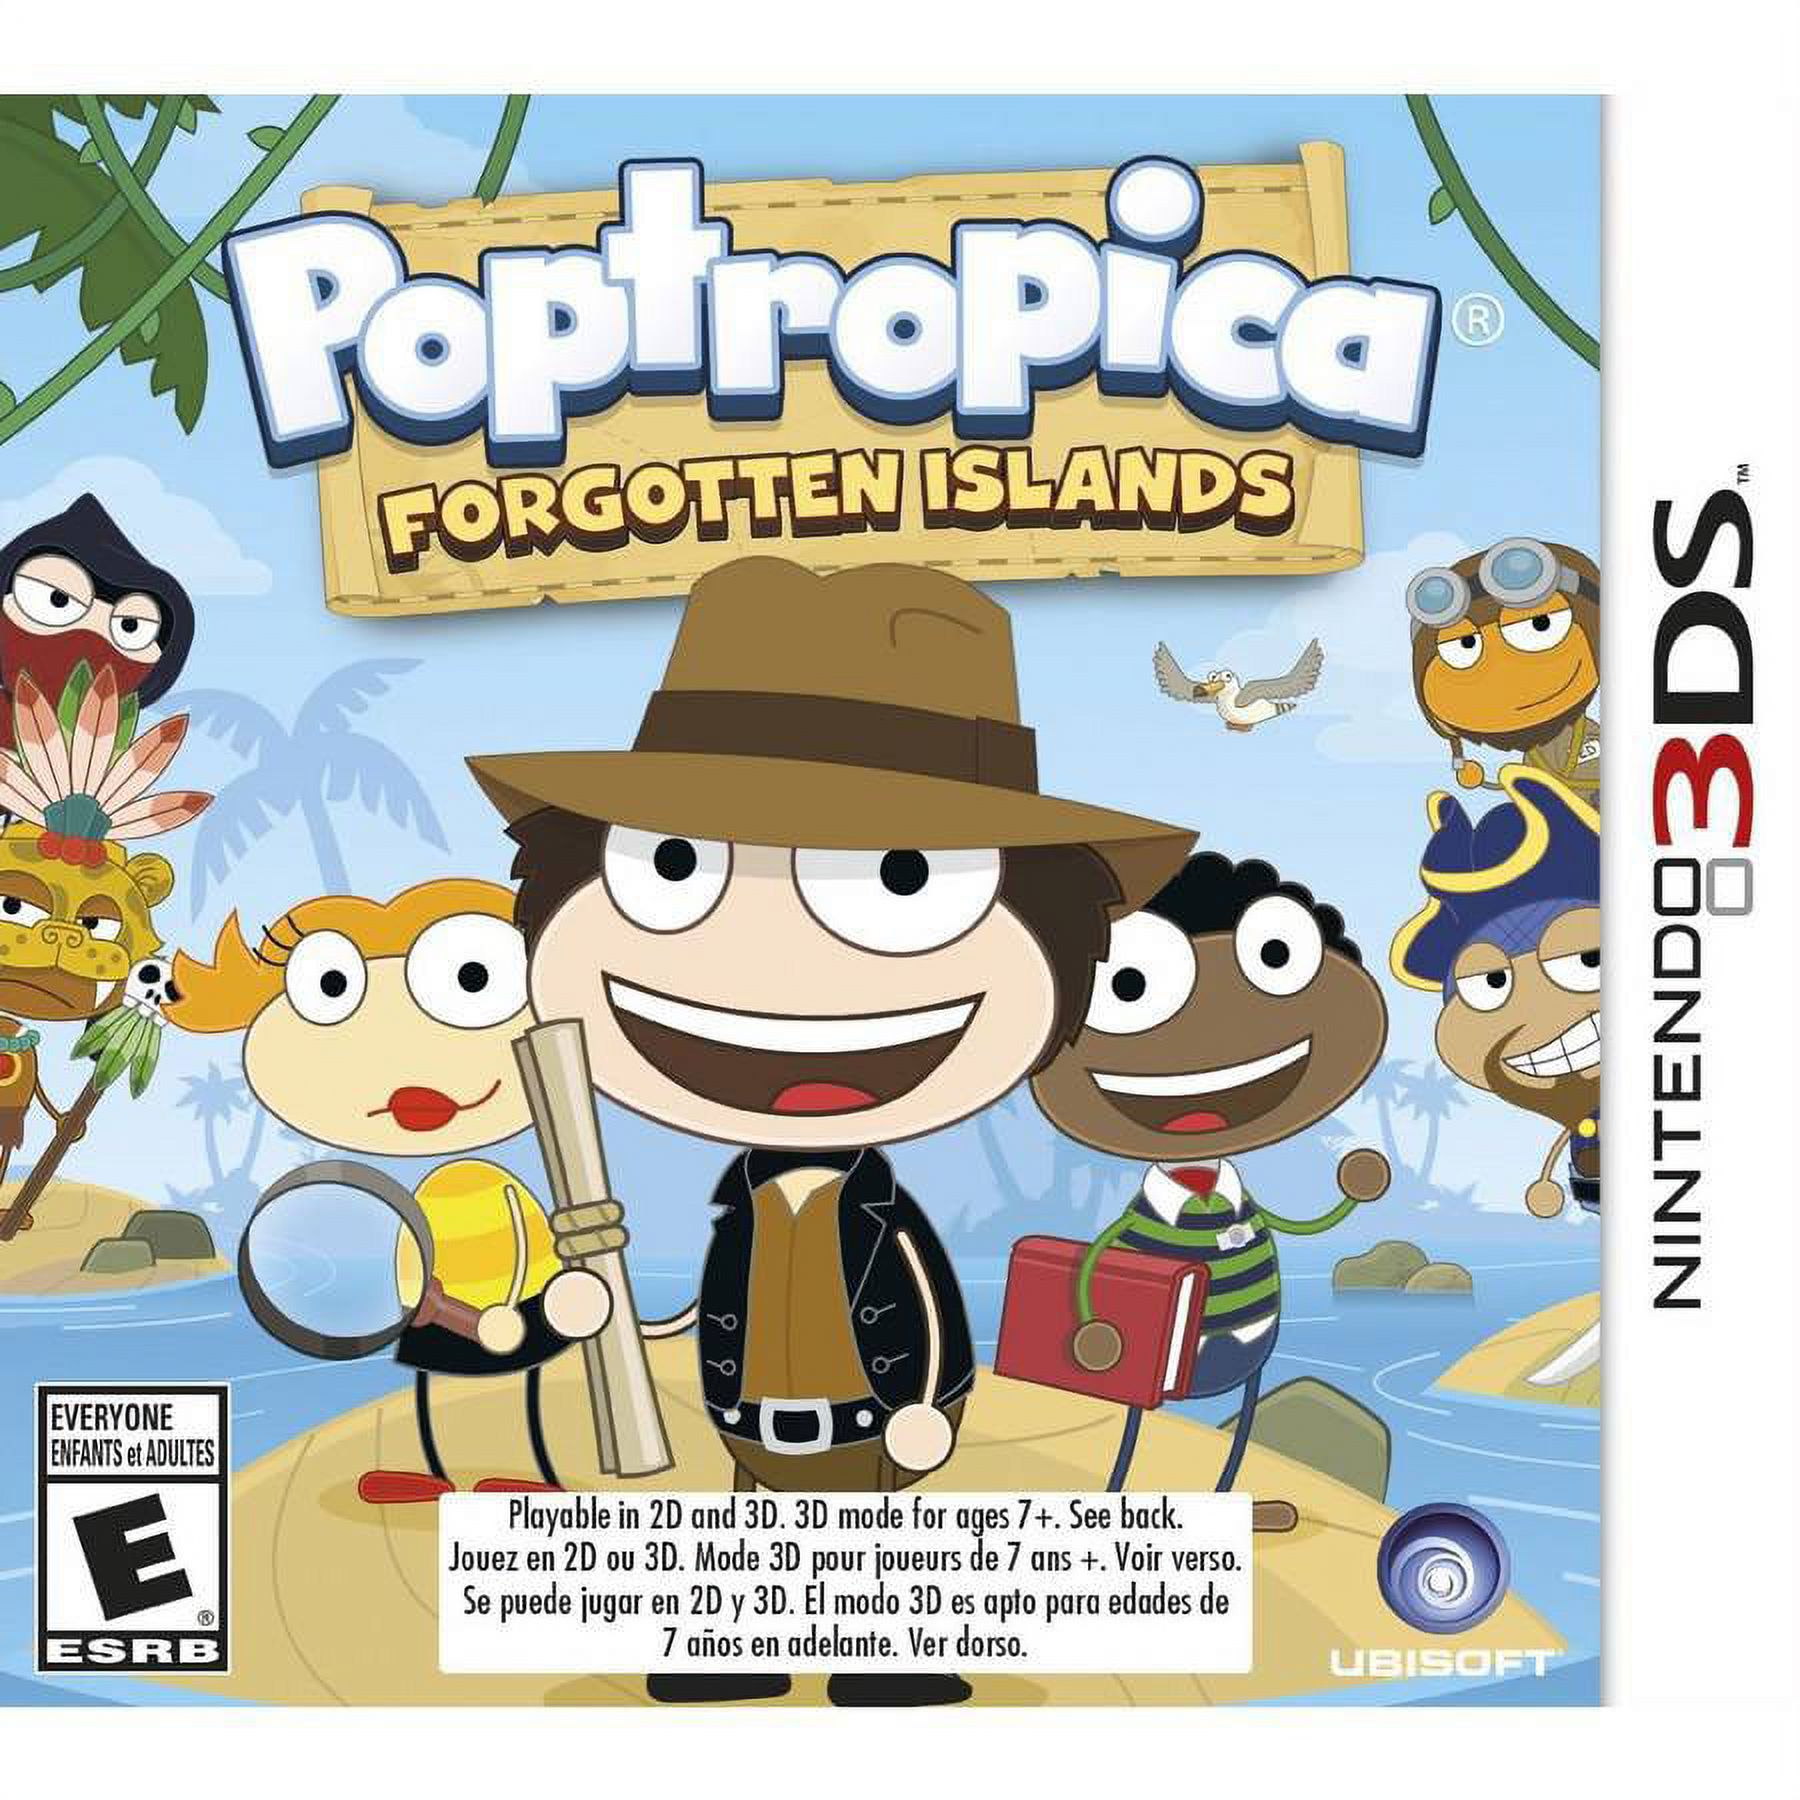 Poptropica Forgotten Islands, Ubisoft, Nintendo 3DS, 887256301255 - image 1 of 7